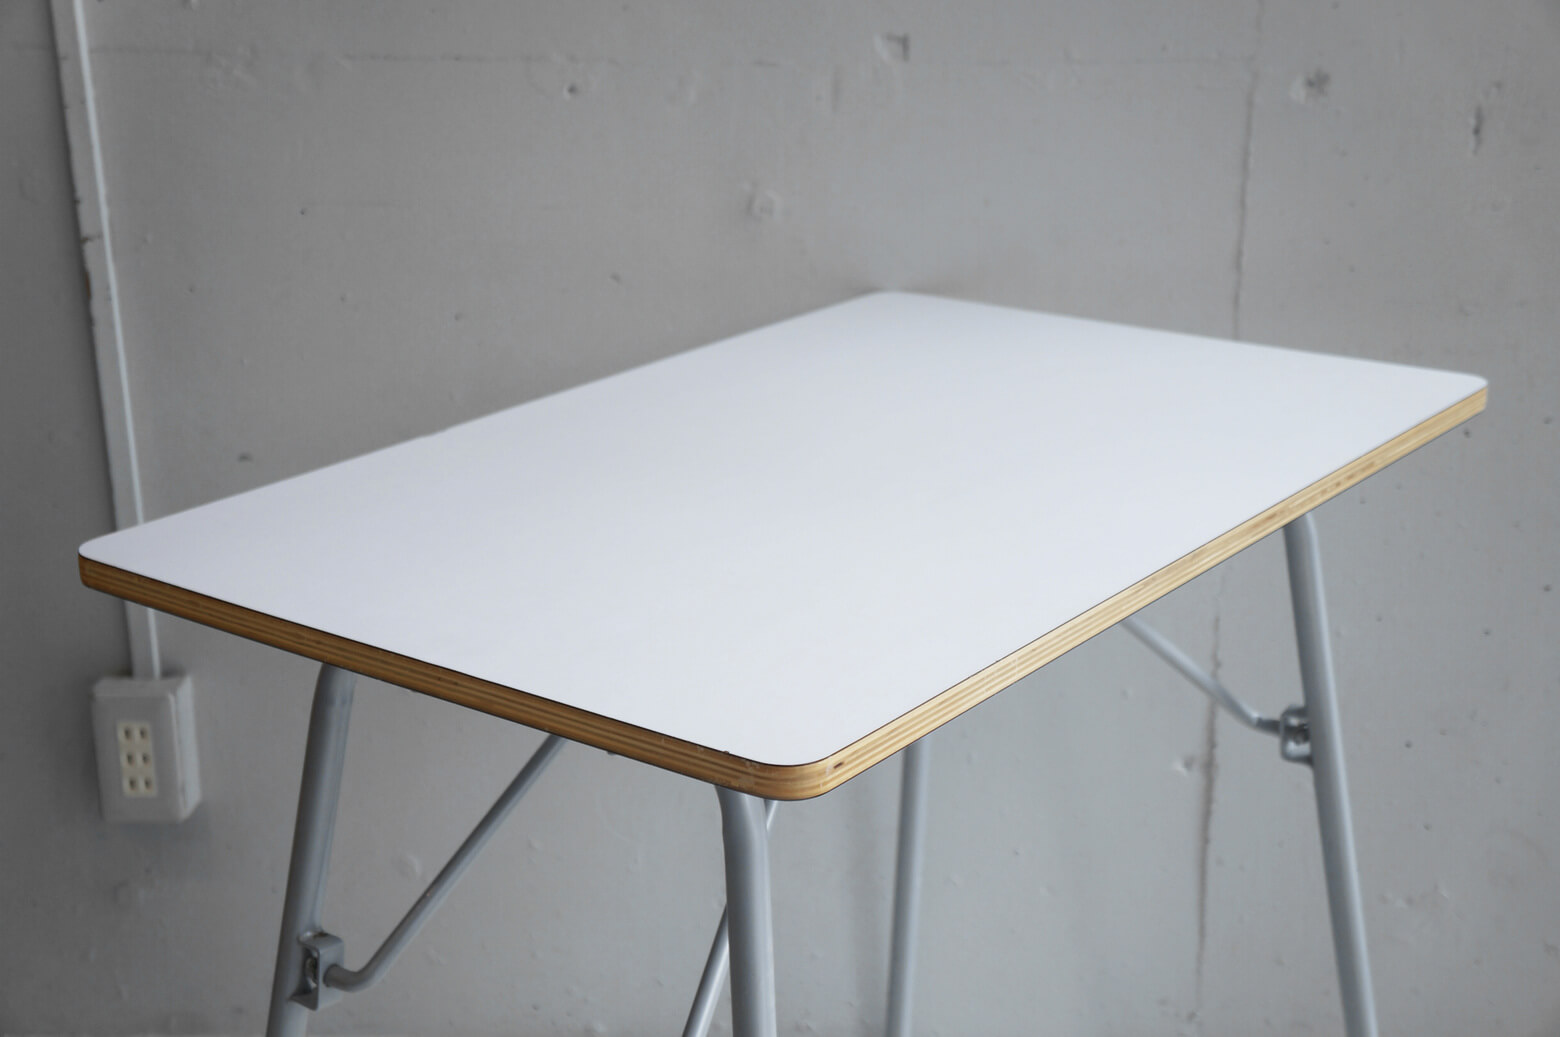 MUJI Folding table / 無印良品 折りたたみテーブル 廃盤